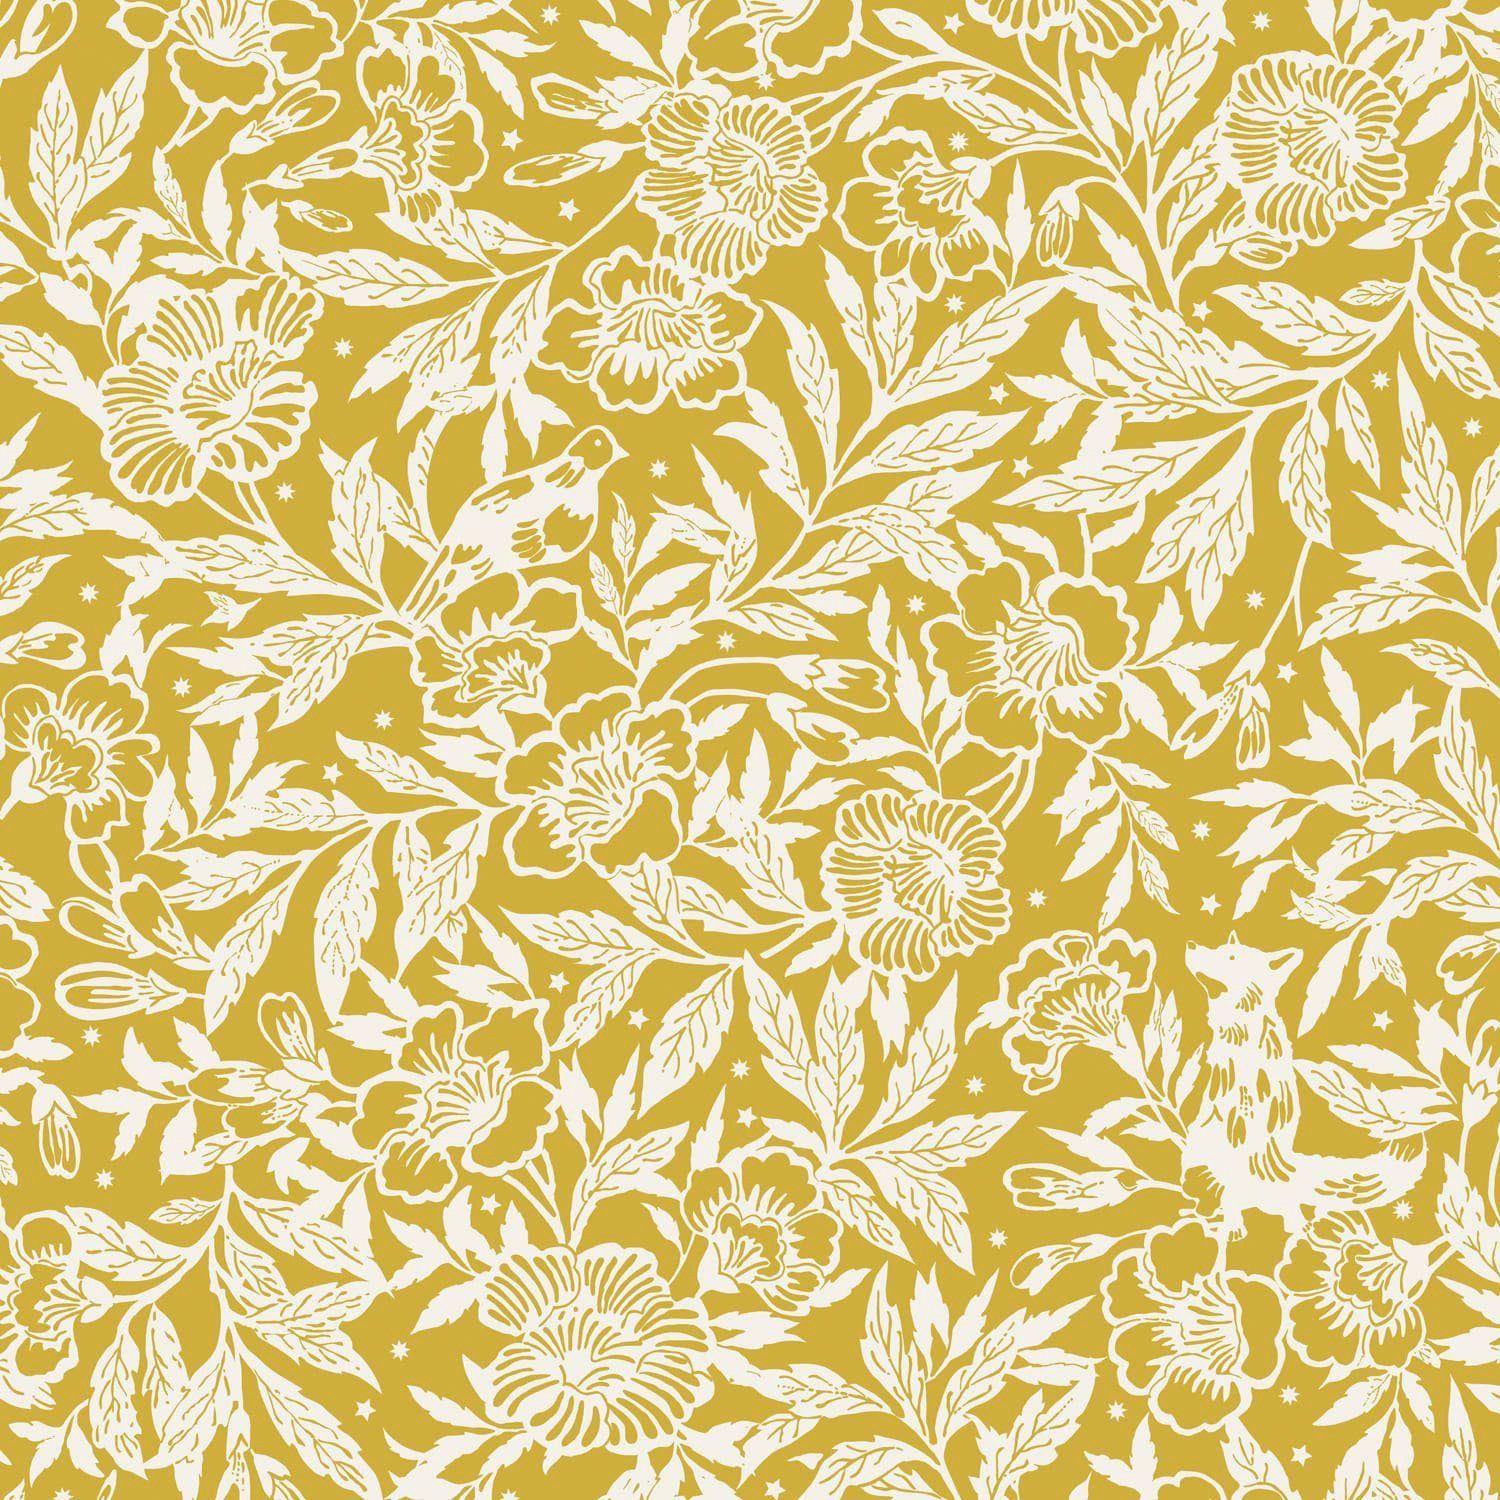 Joules Vliestapete Twilight Ditsy glatt, (1 floral Gold, Antique St), floral